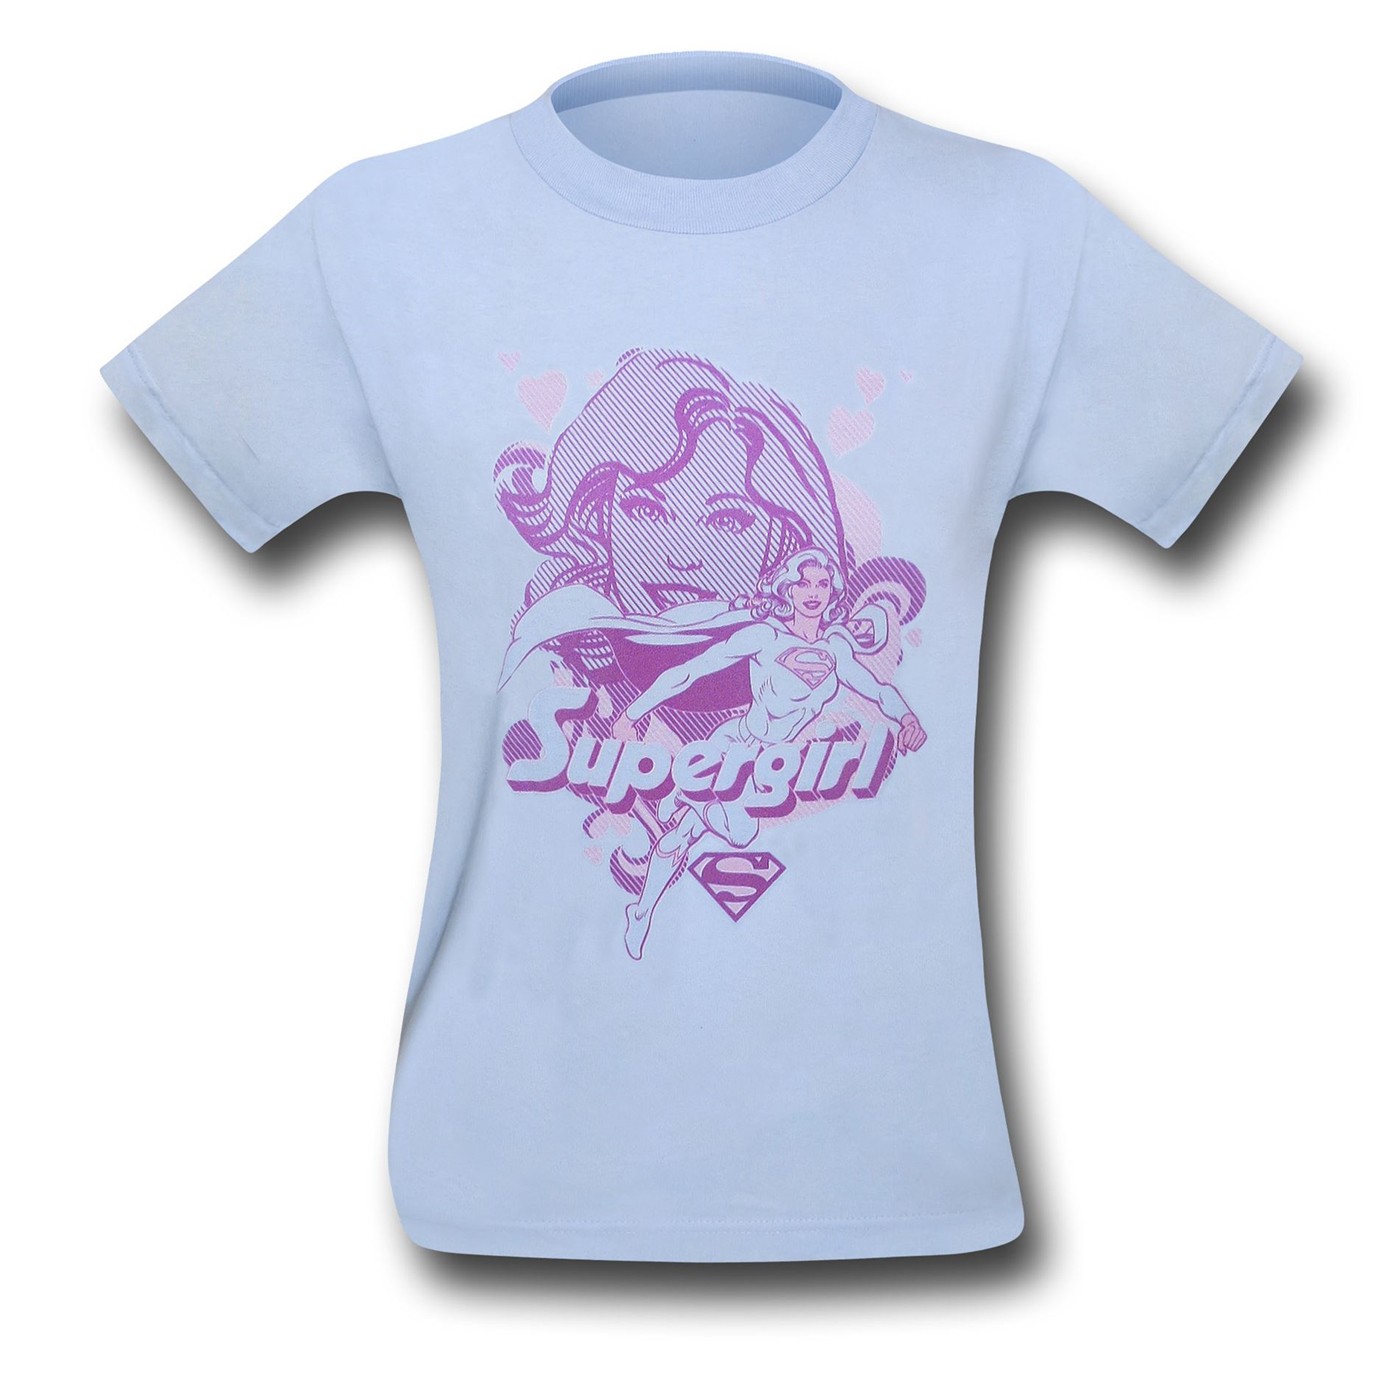 Supergirl Pink on Blue Kids T-Shirt